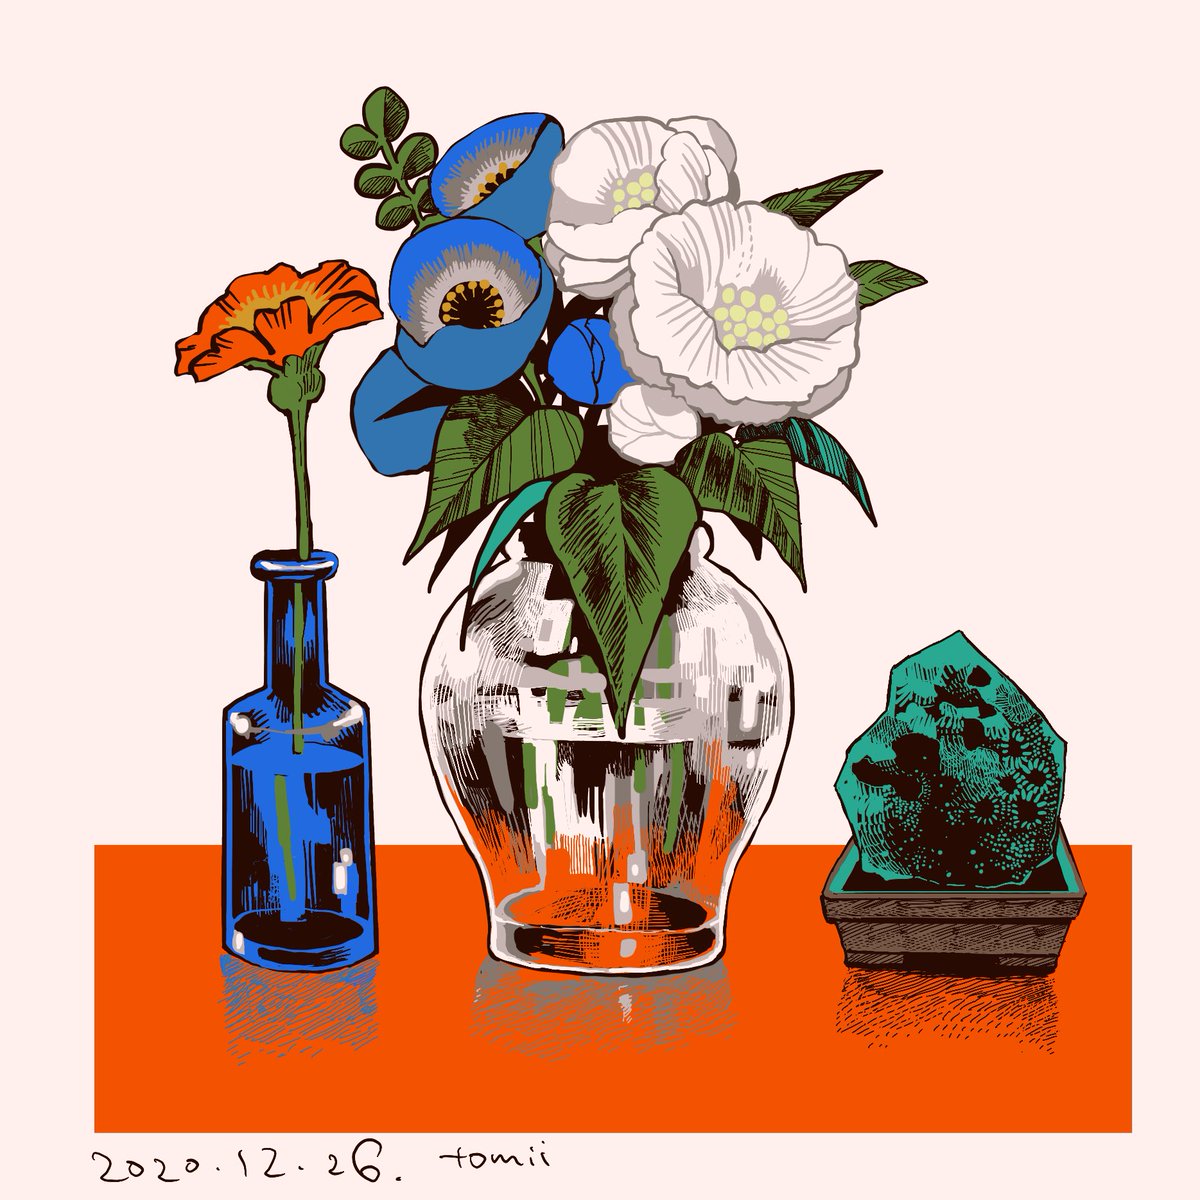 「生花を見守る石: 」|トミイマサコのイラスト